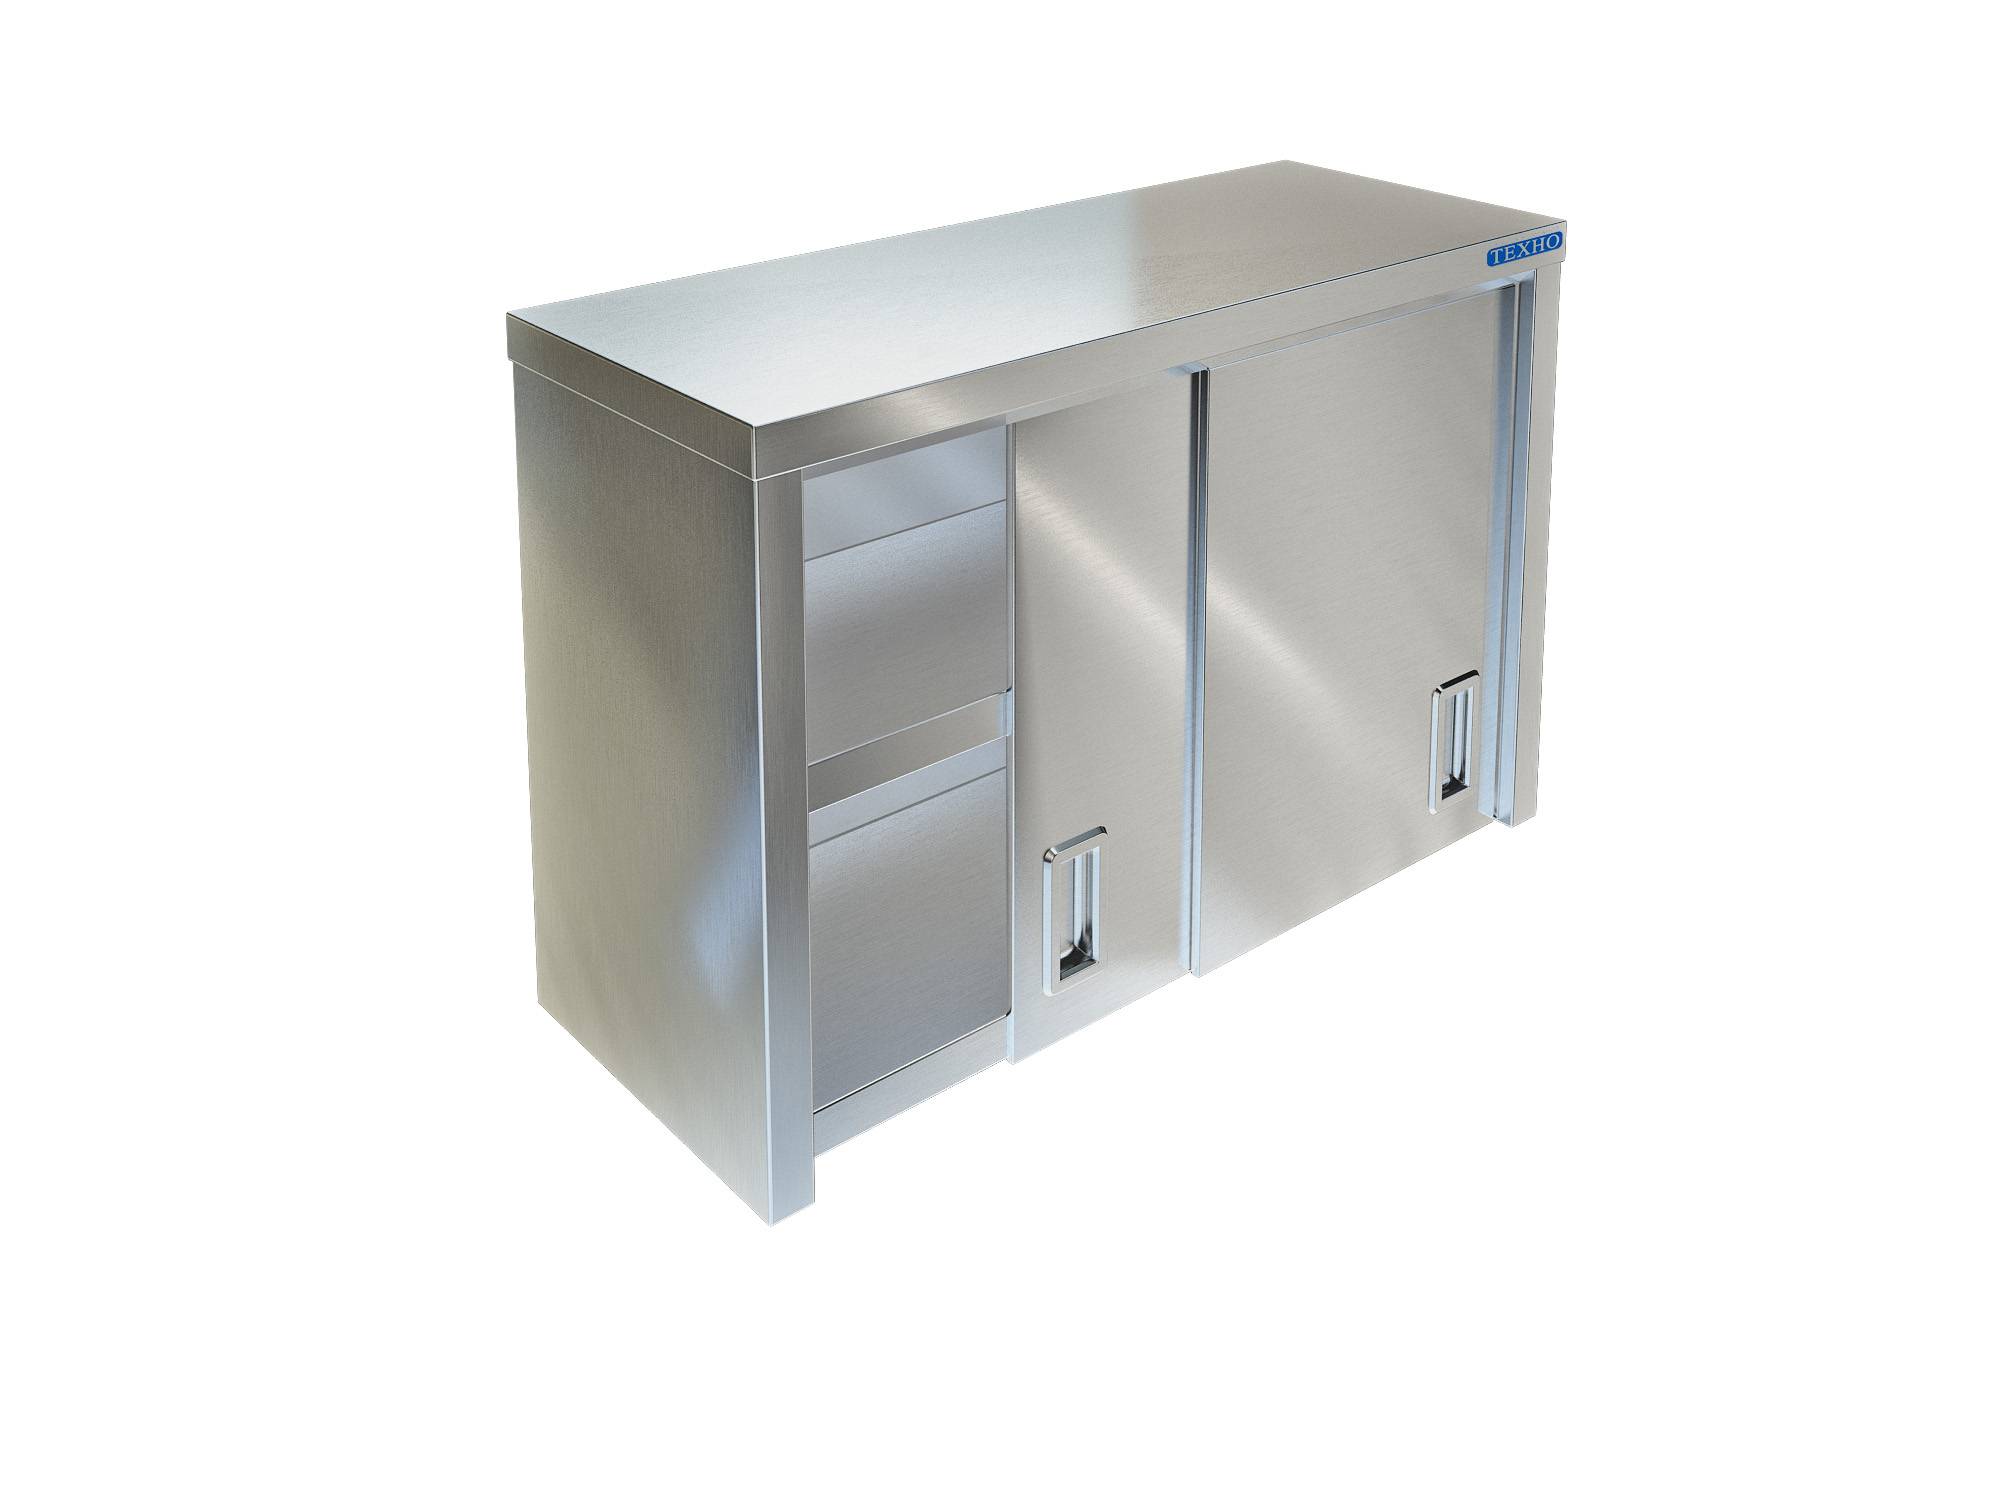 Фото - полка-шкаф для кухни с дверками из нержавейки пн-124/600 (600x350x600 мм)